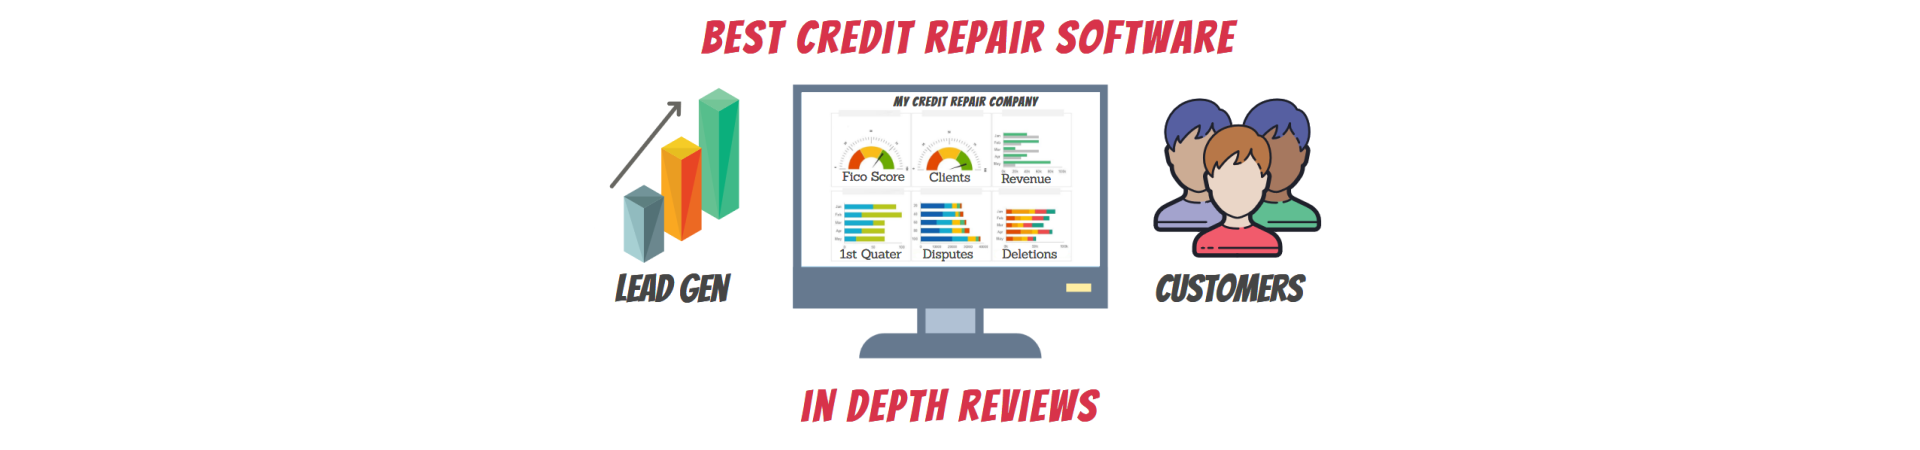 credit repair software for credit repair business